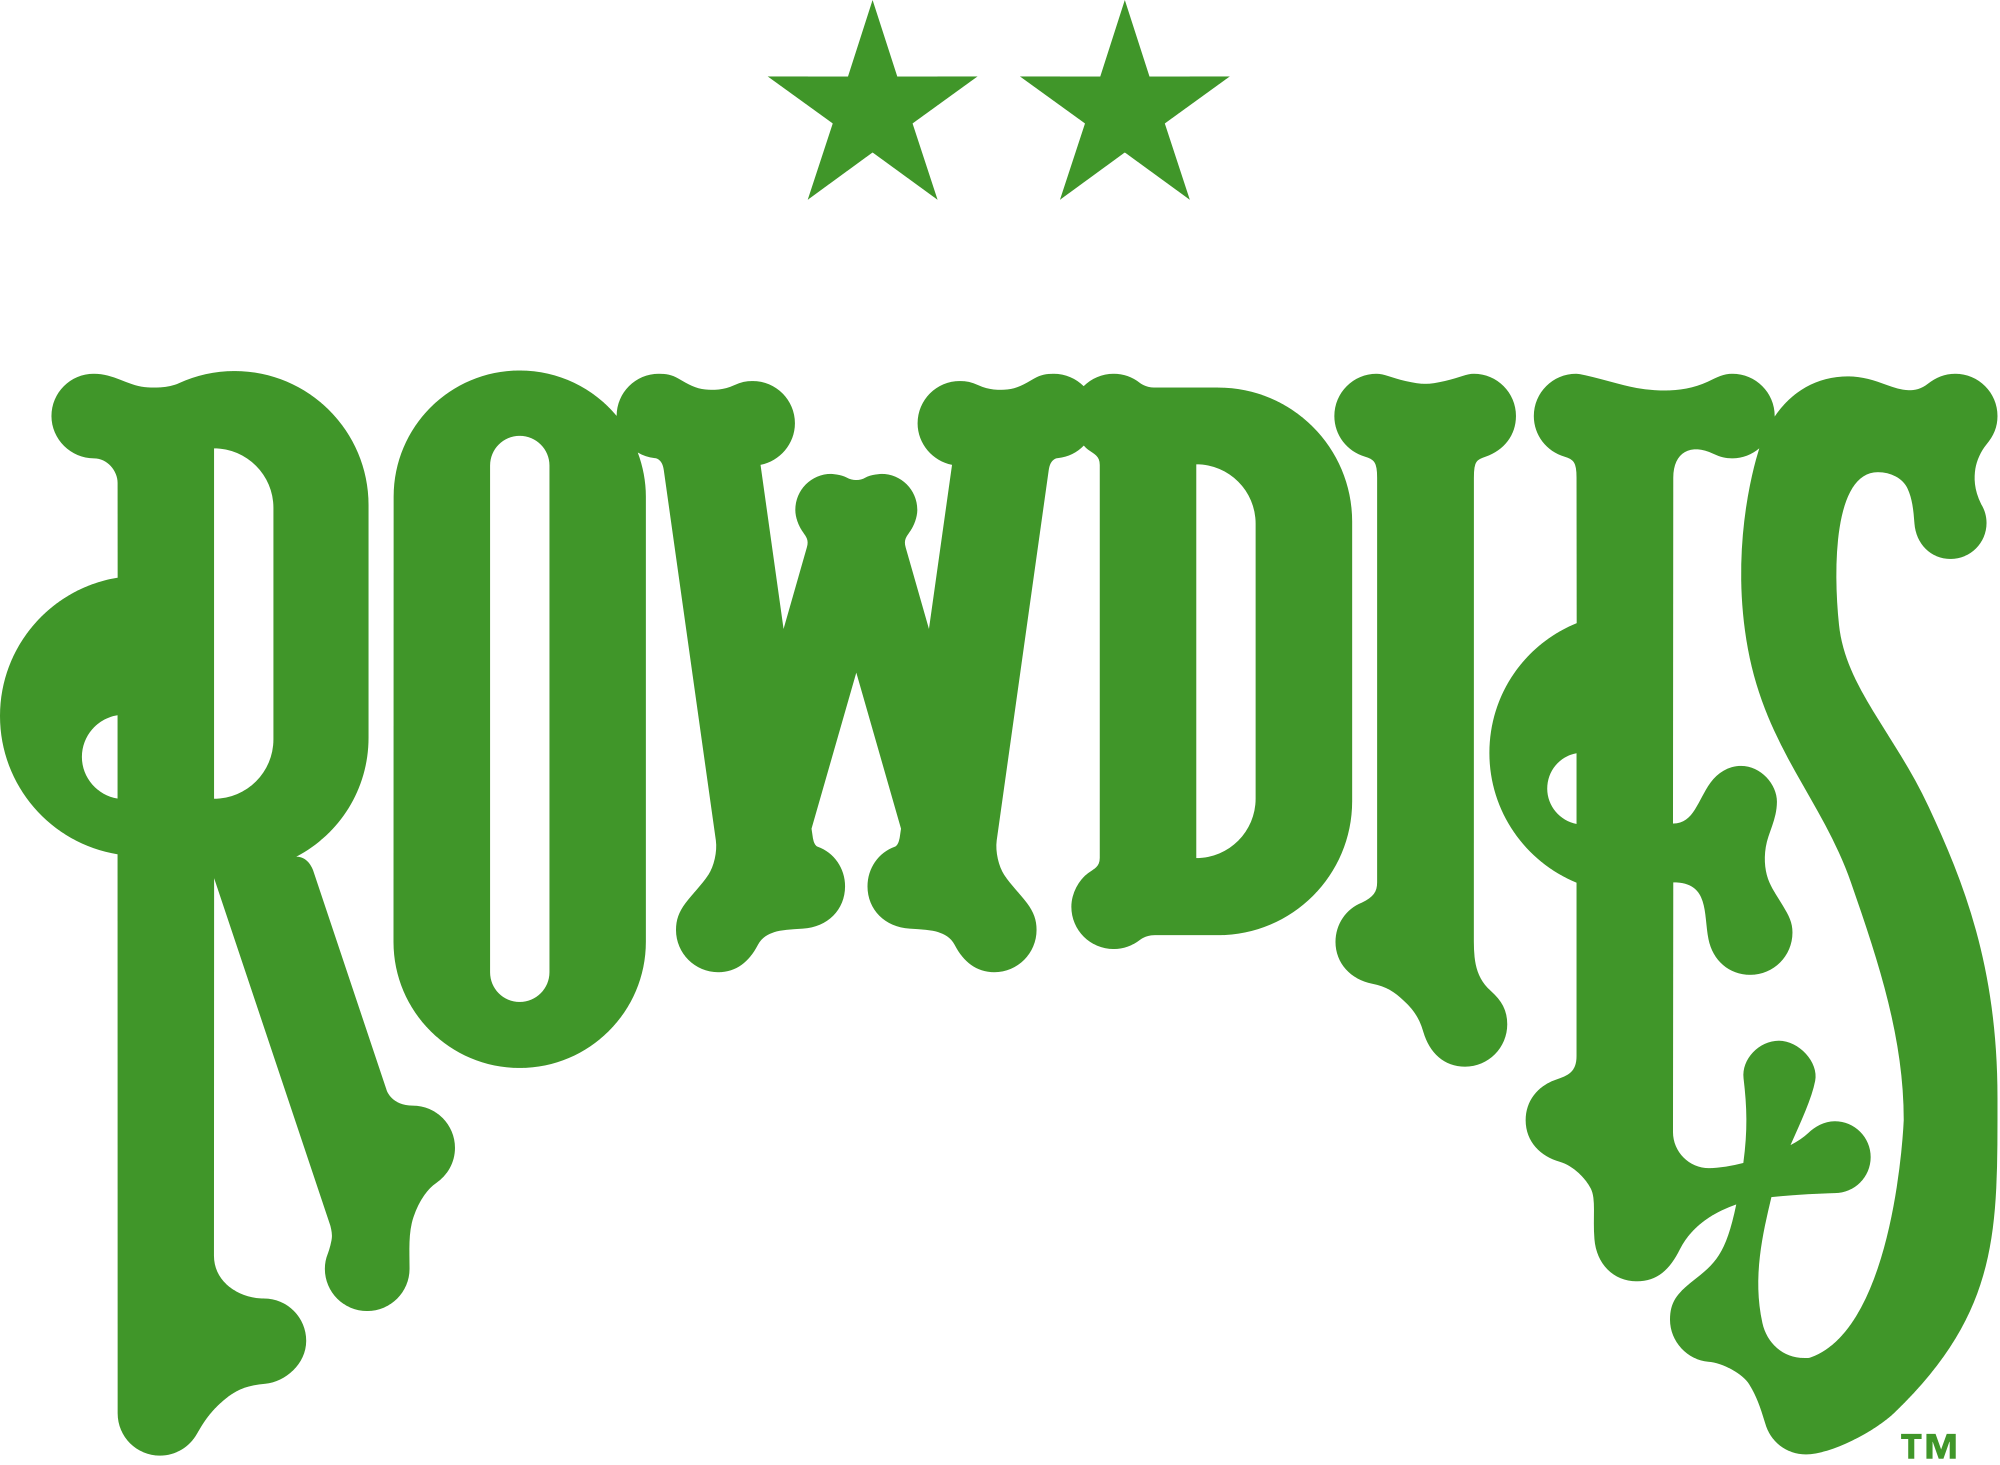 Tampa Bay Rowdies logo, by Bob Andelman